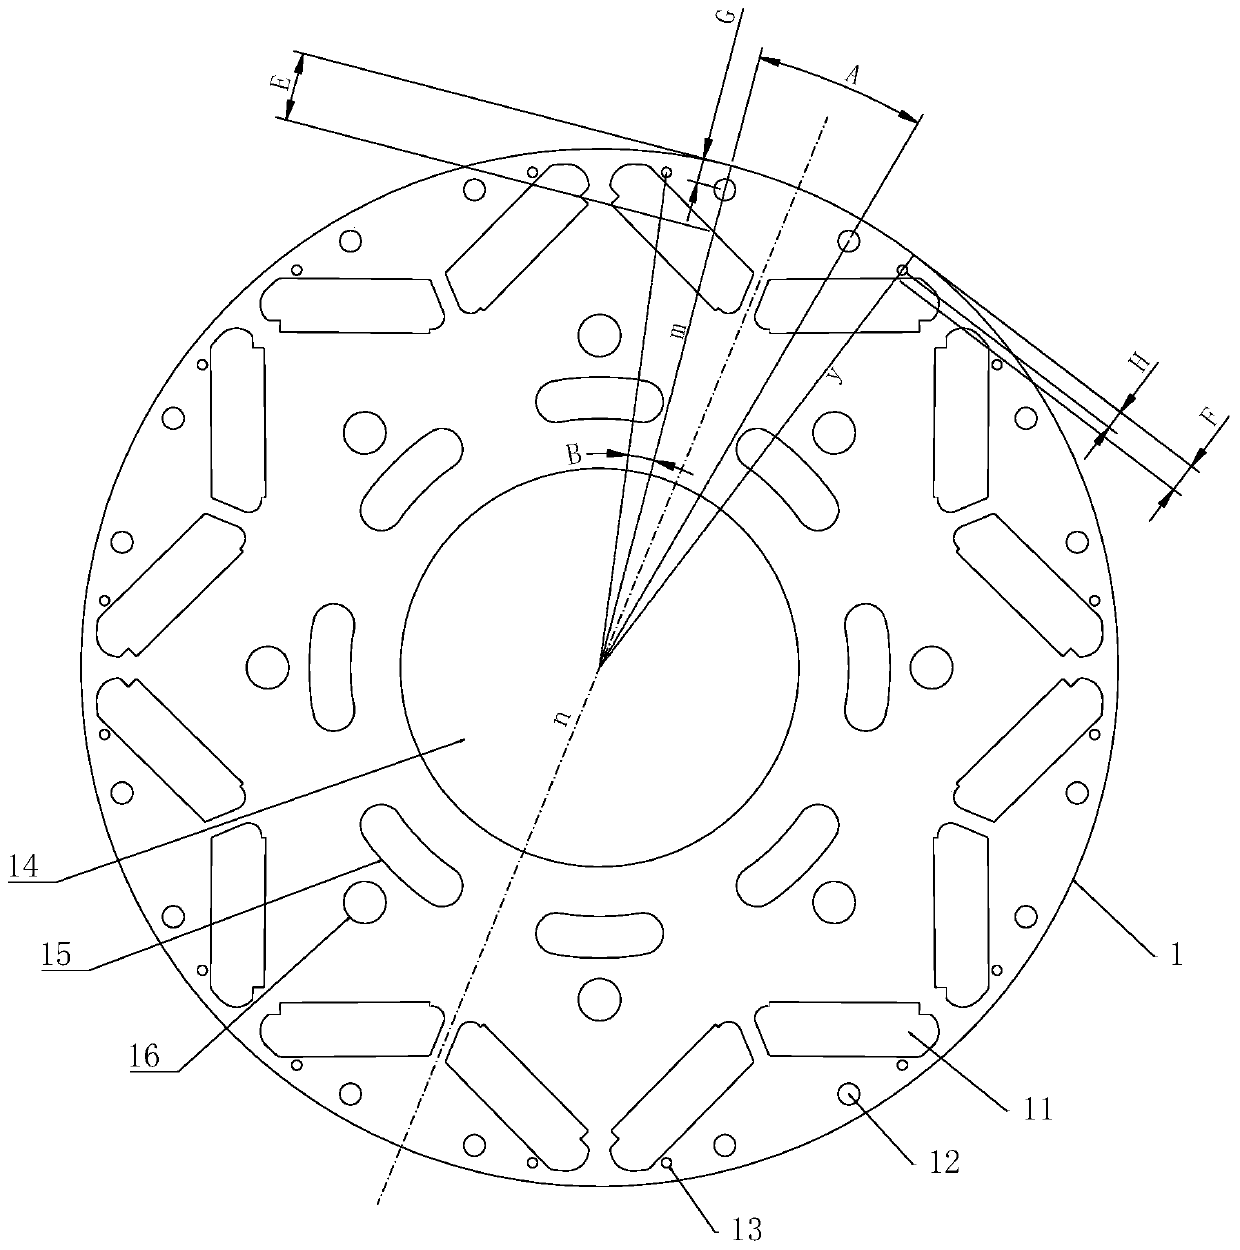 Rotor chip, rotor and motor